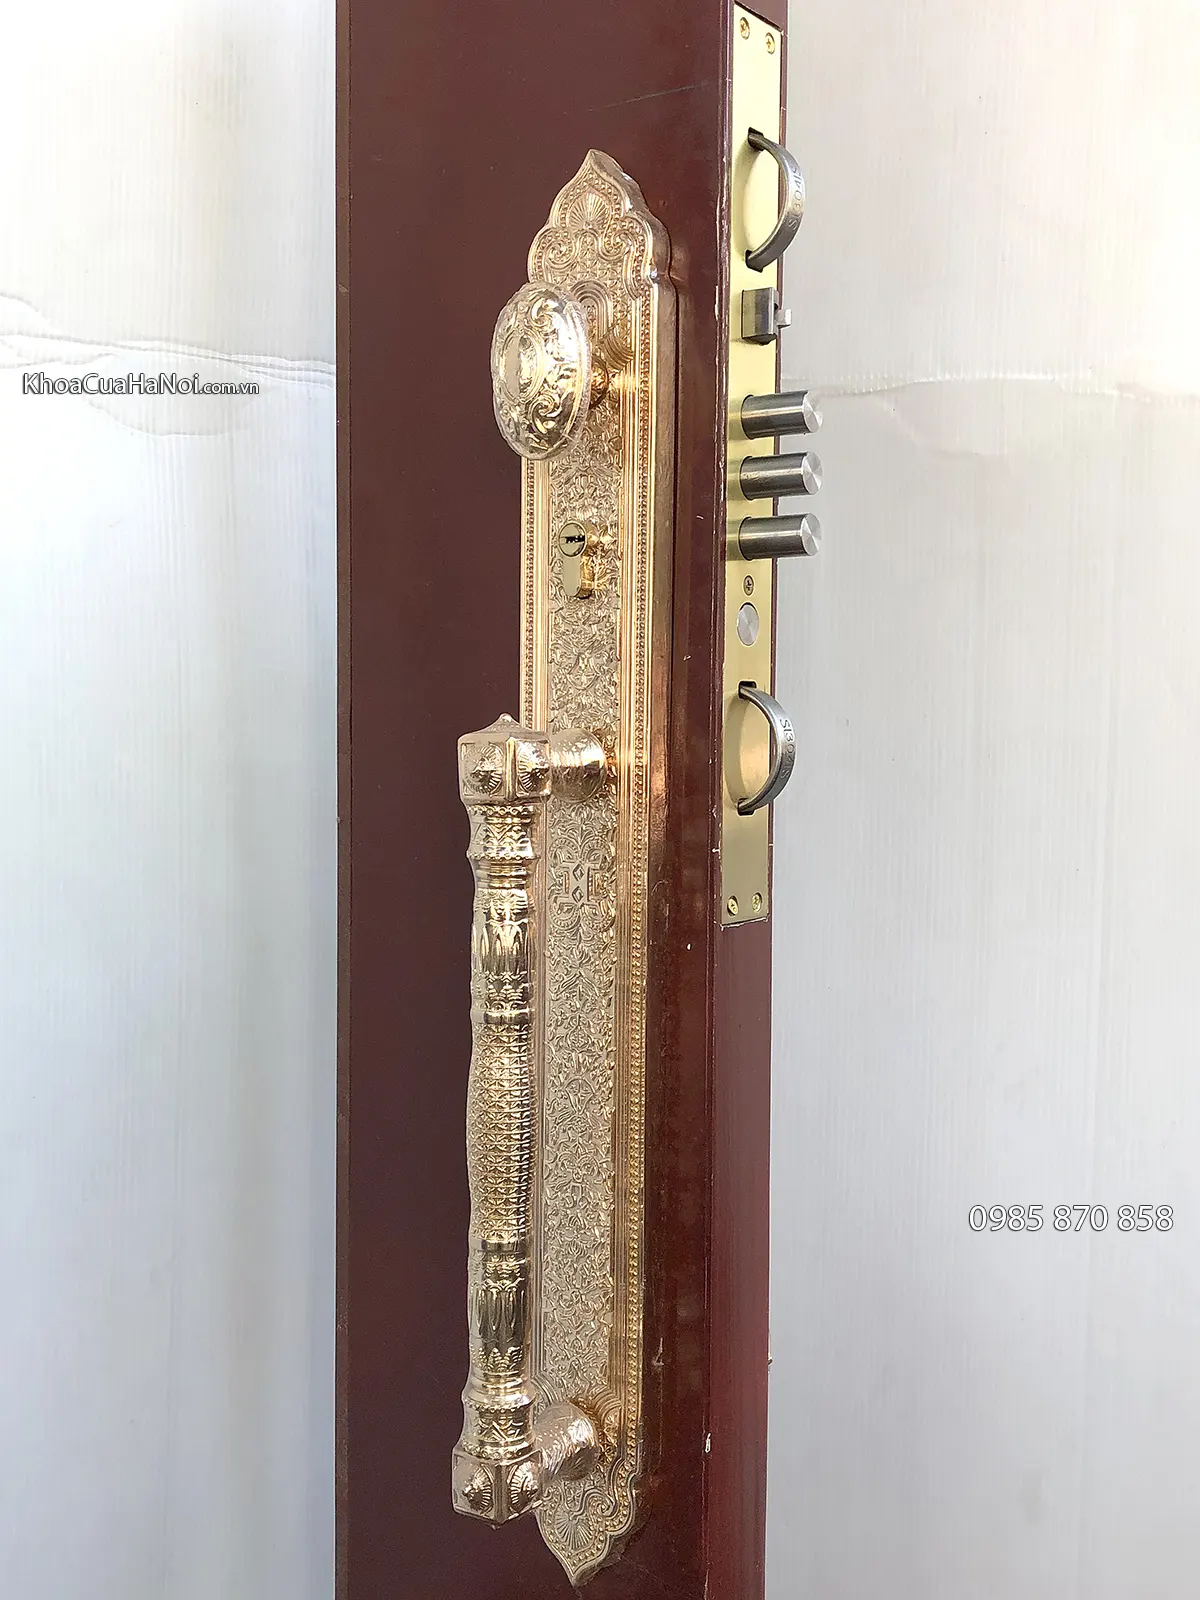 khóa cửa gỗ mạ vàng JP-001-24K